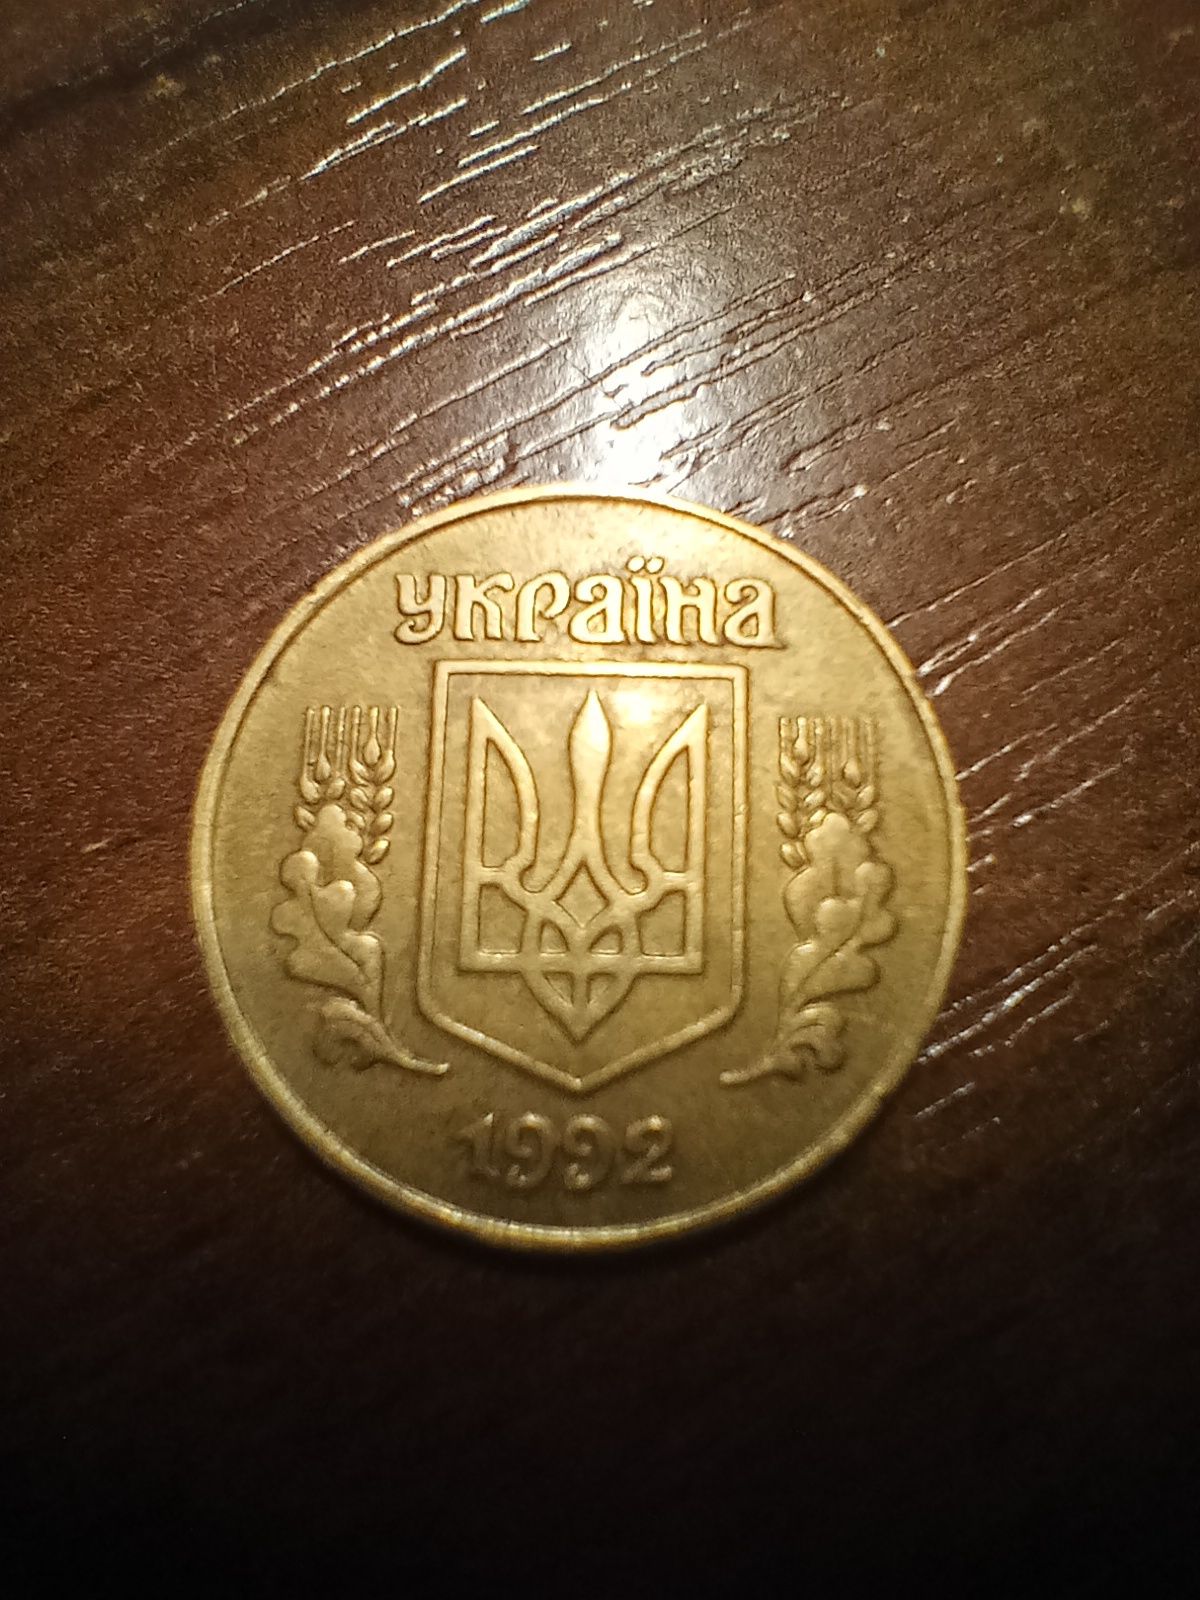 Продаю монету України 25 копійок 1992 года